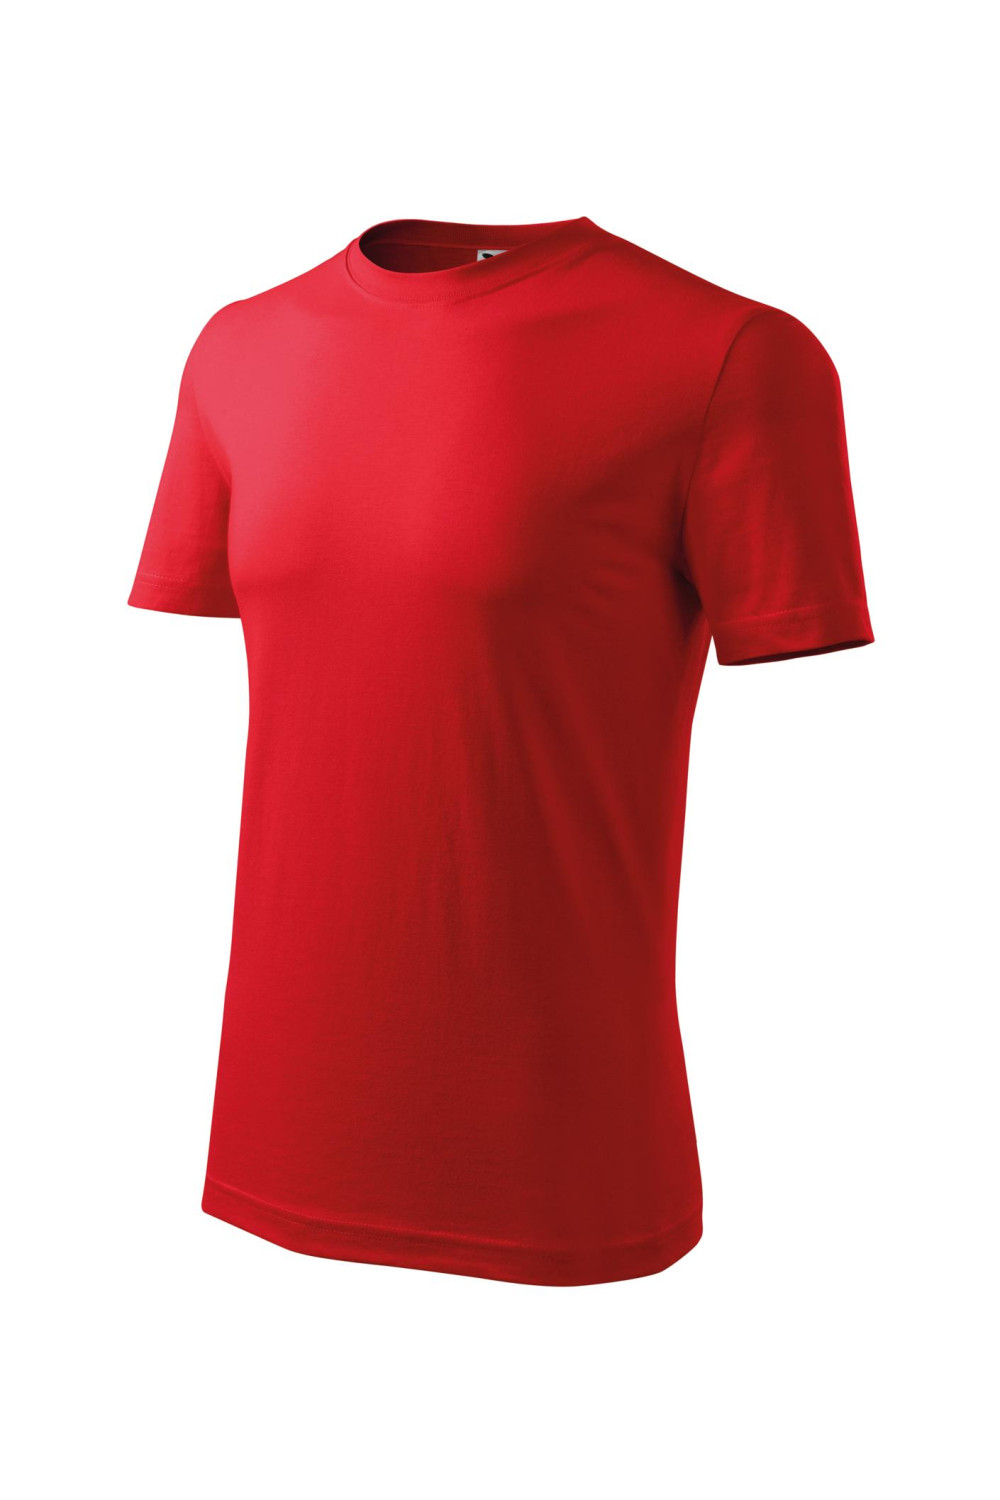 Koszulka męska 100% bawełna CLASSIC 132 czerwony